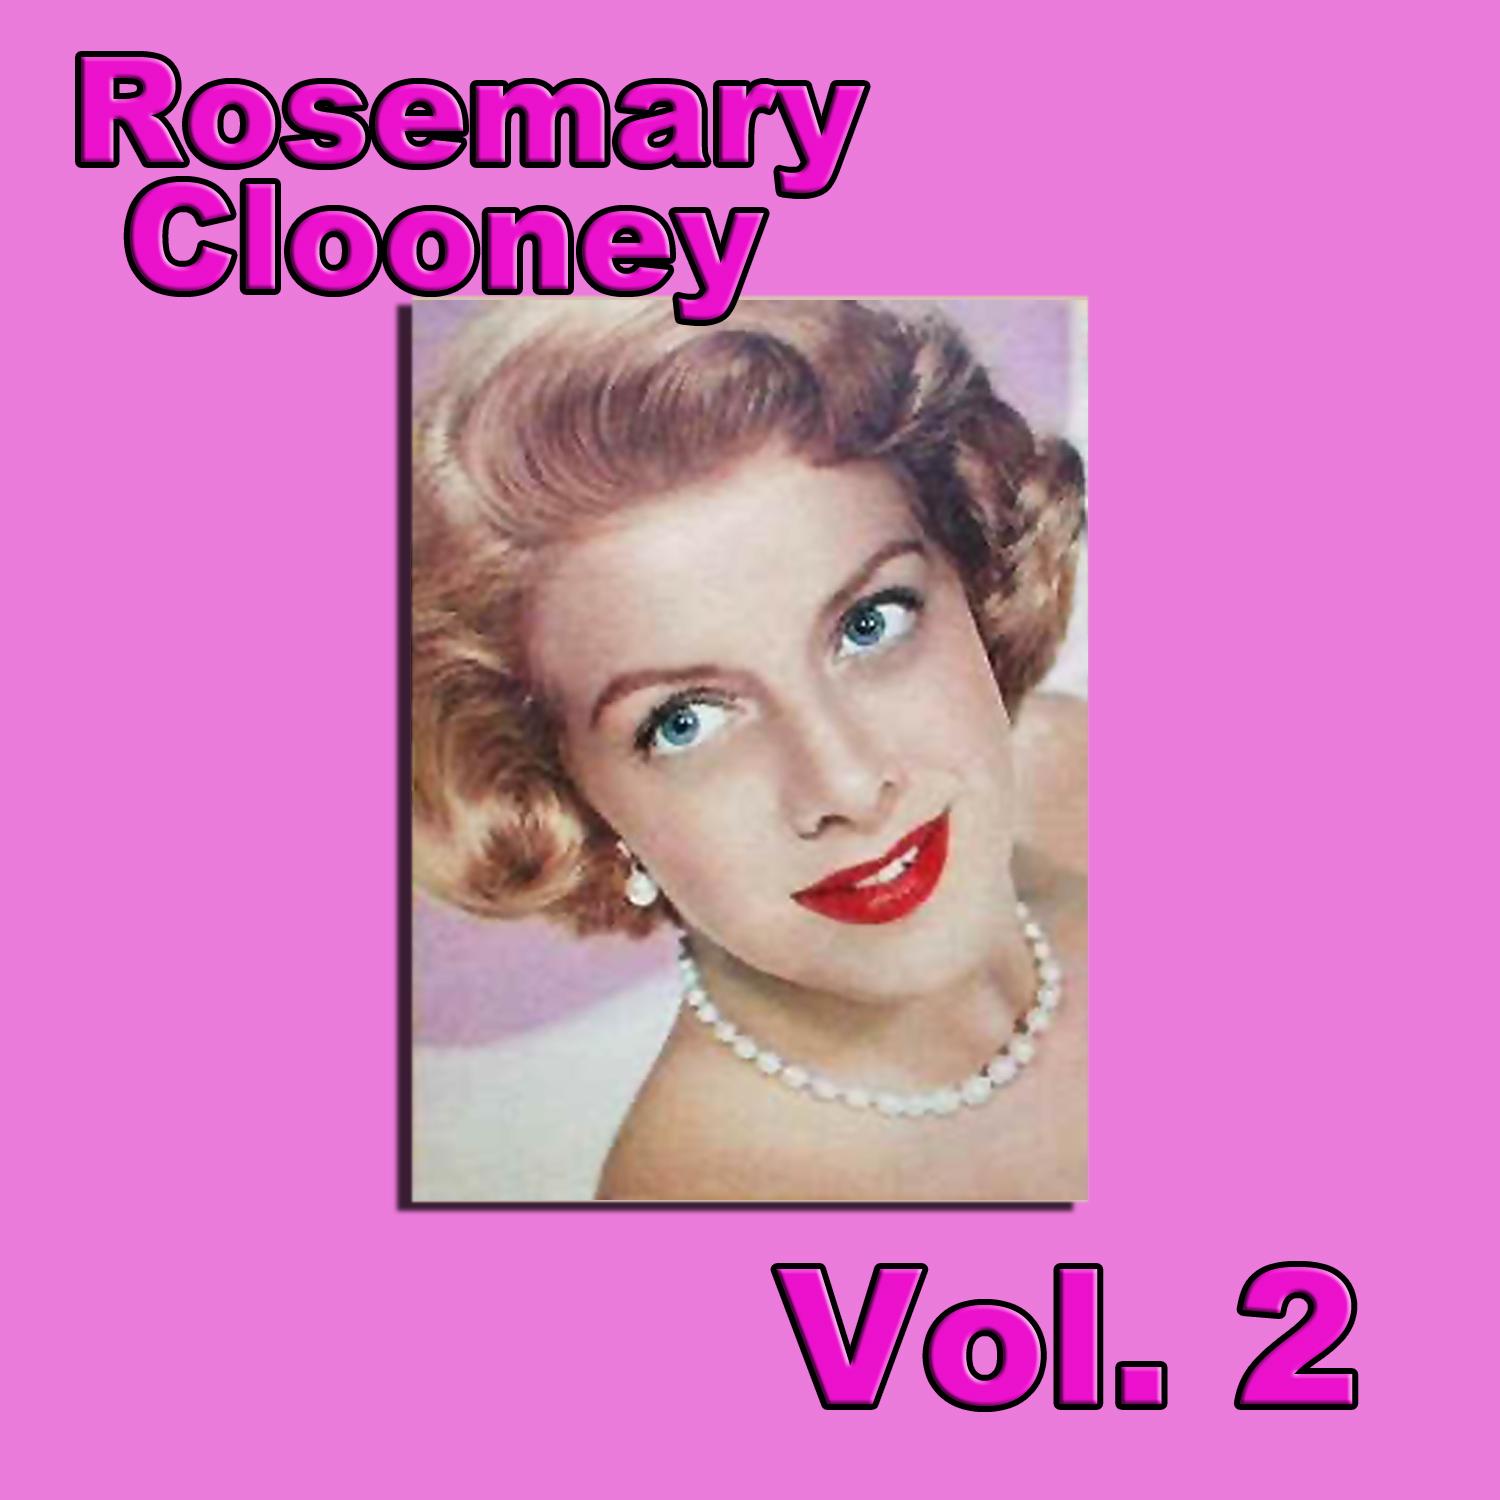 Rosemary Clooney, Vol. 2